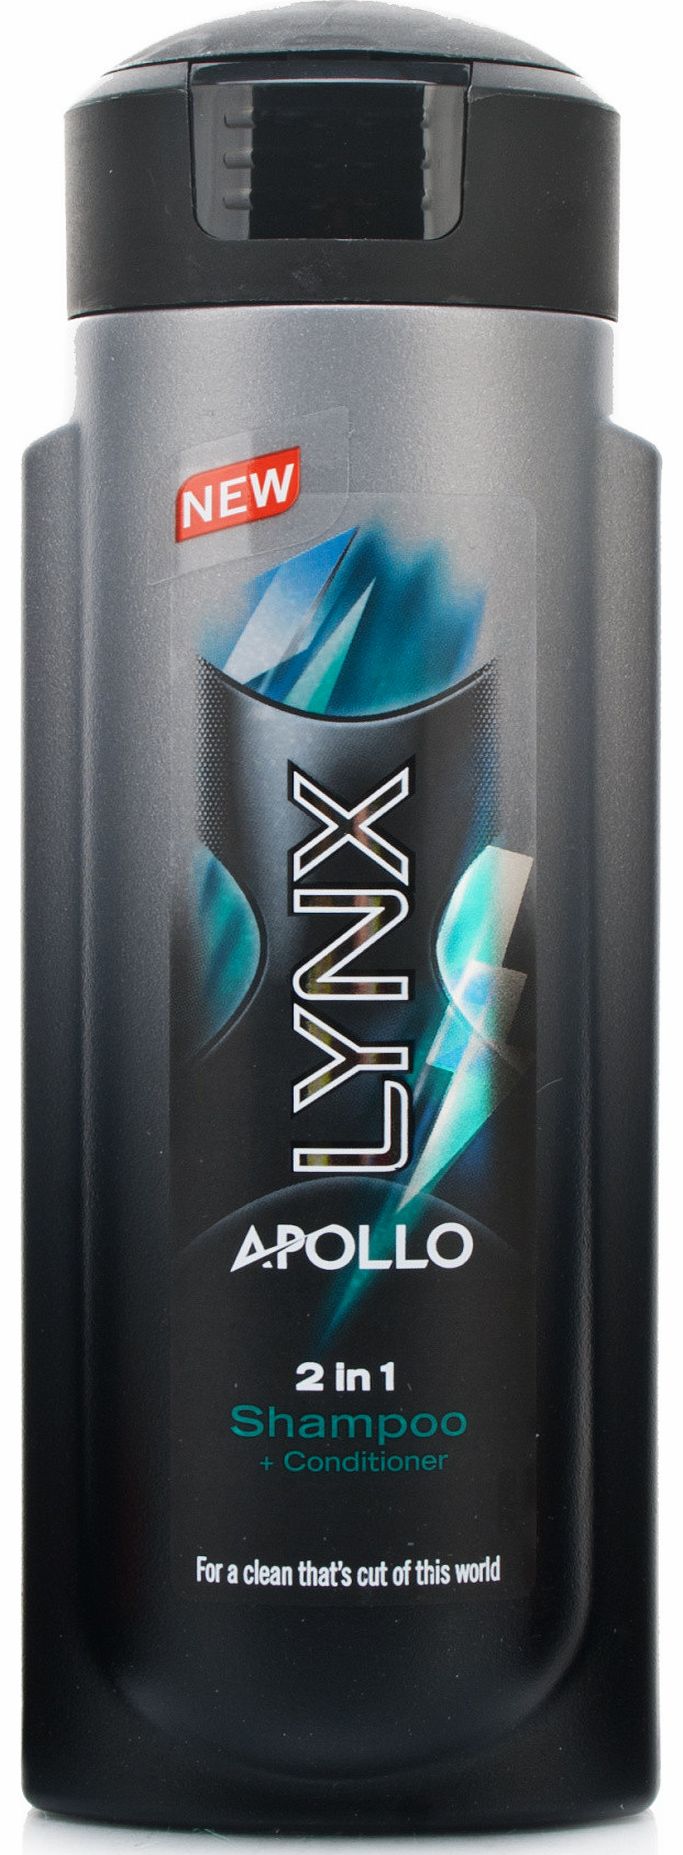 Apollo 2 in 1 Shampoo & Conditioner